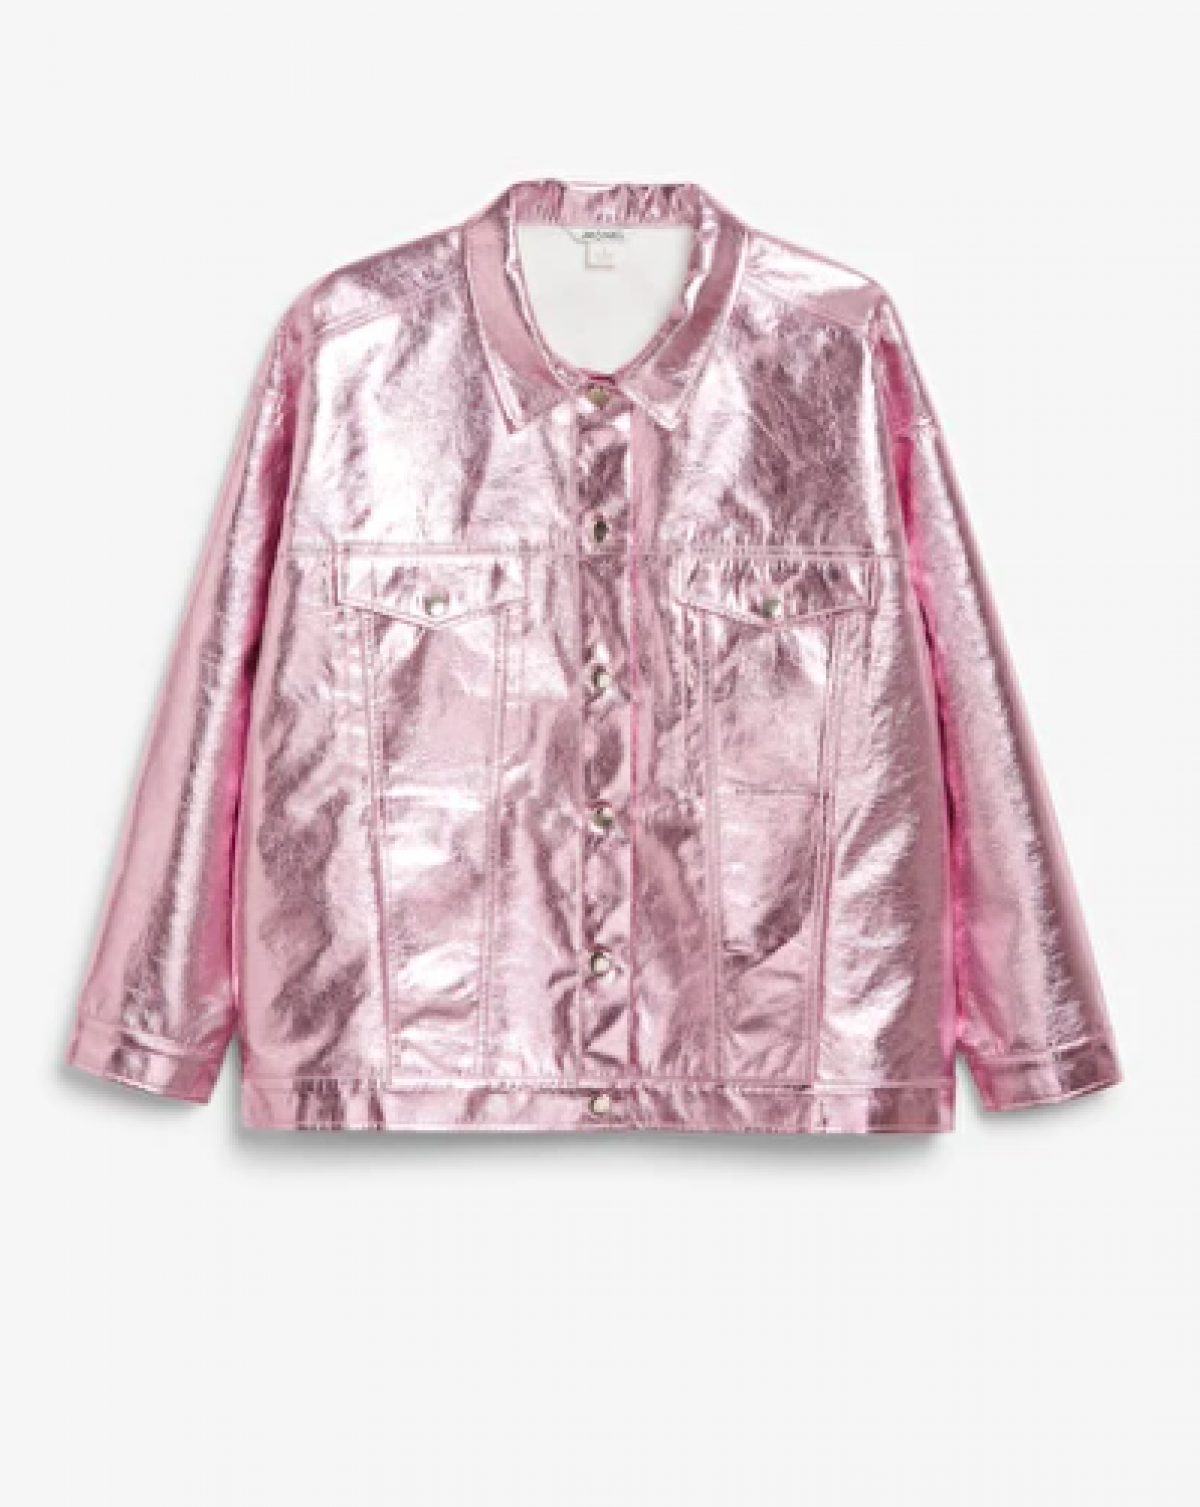 Metallic jacket in roze